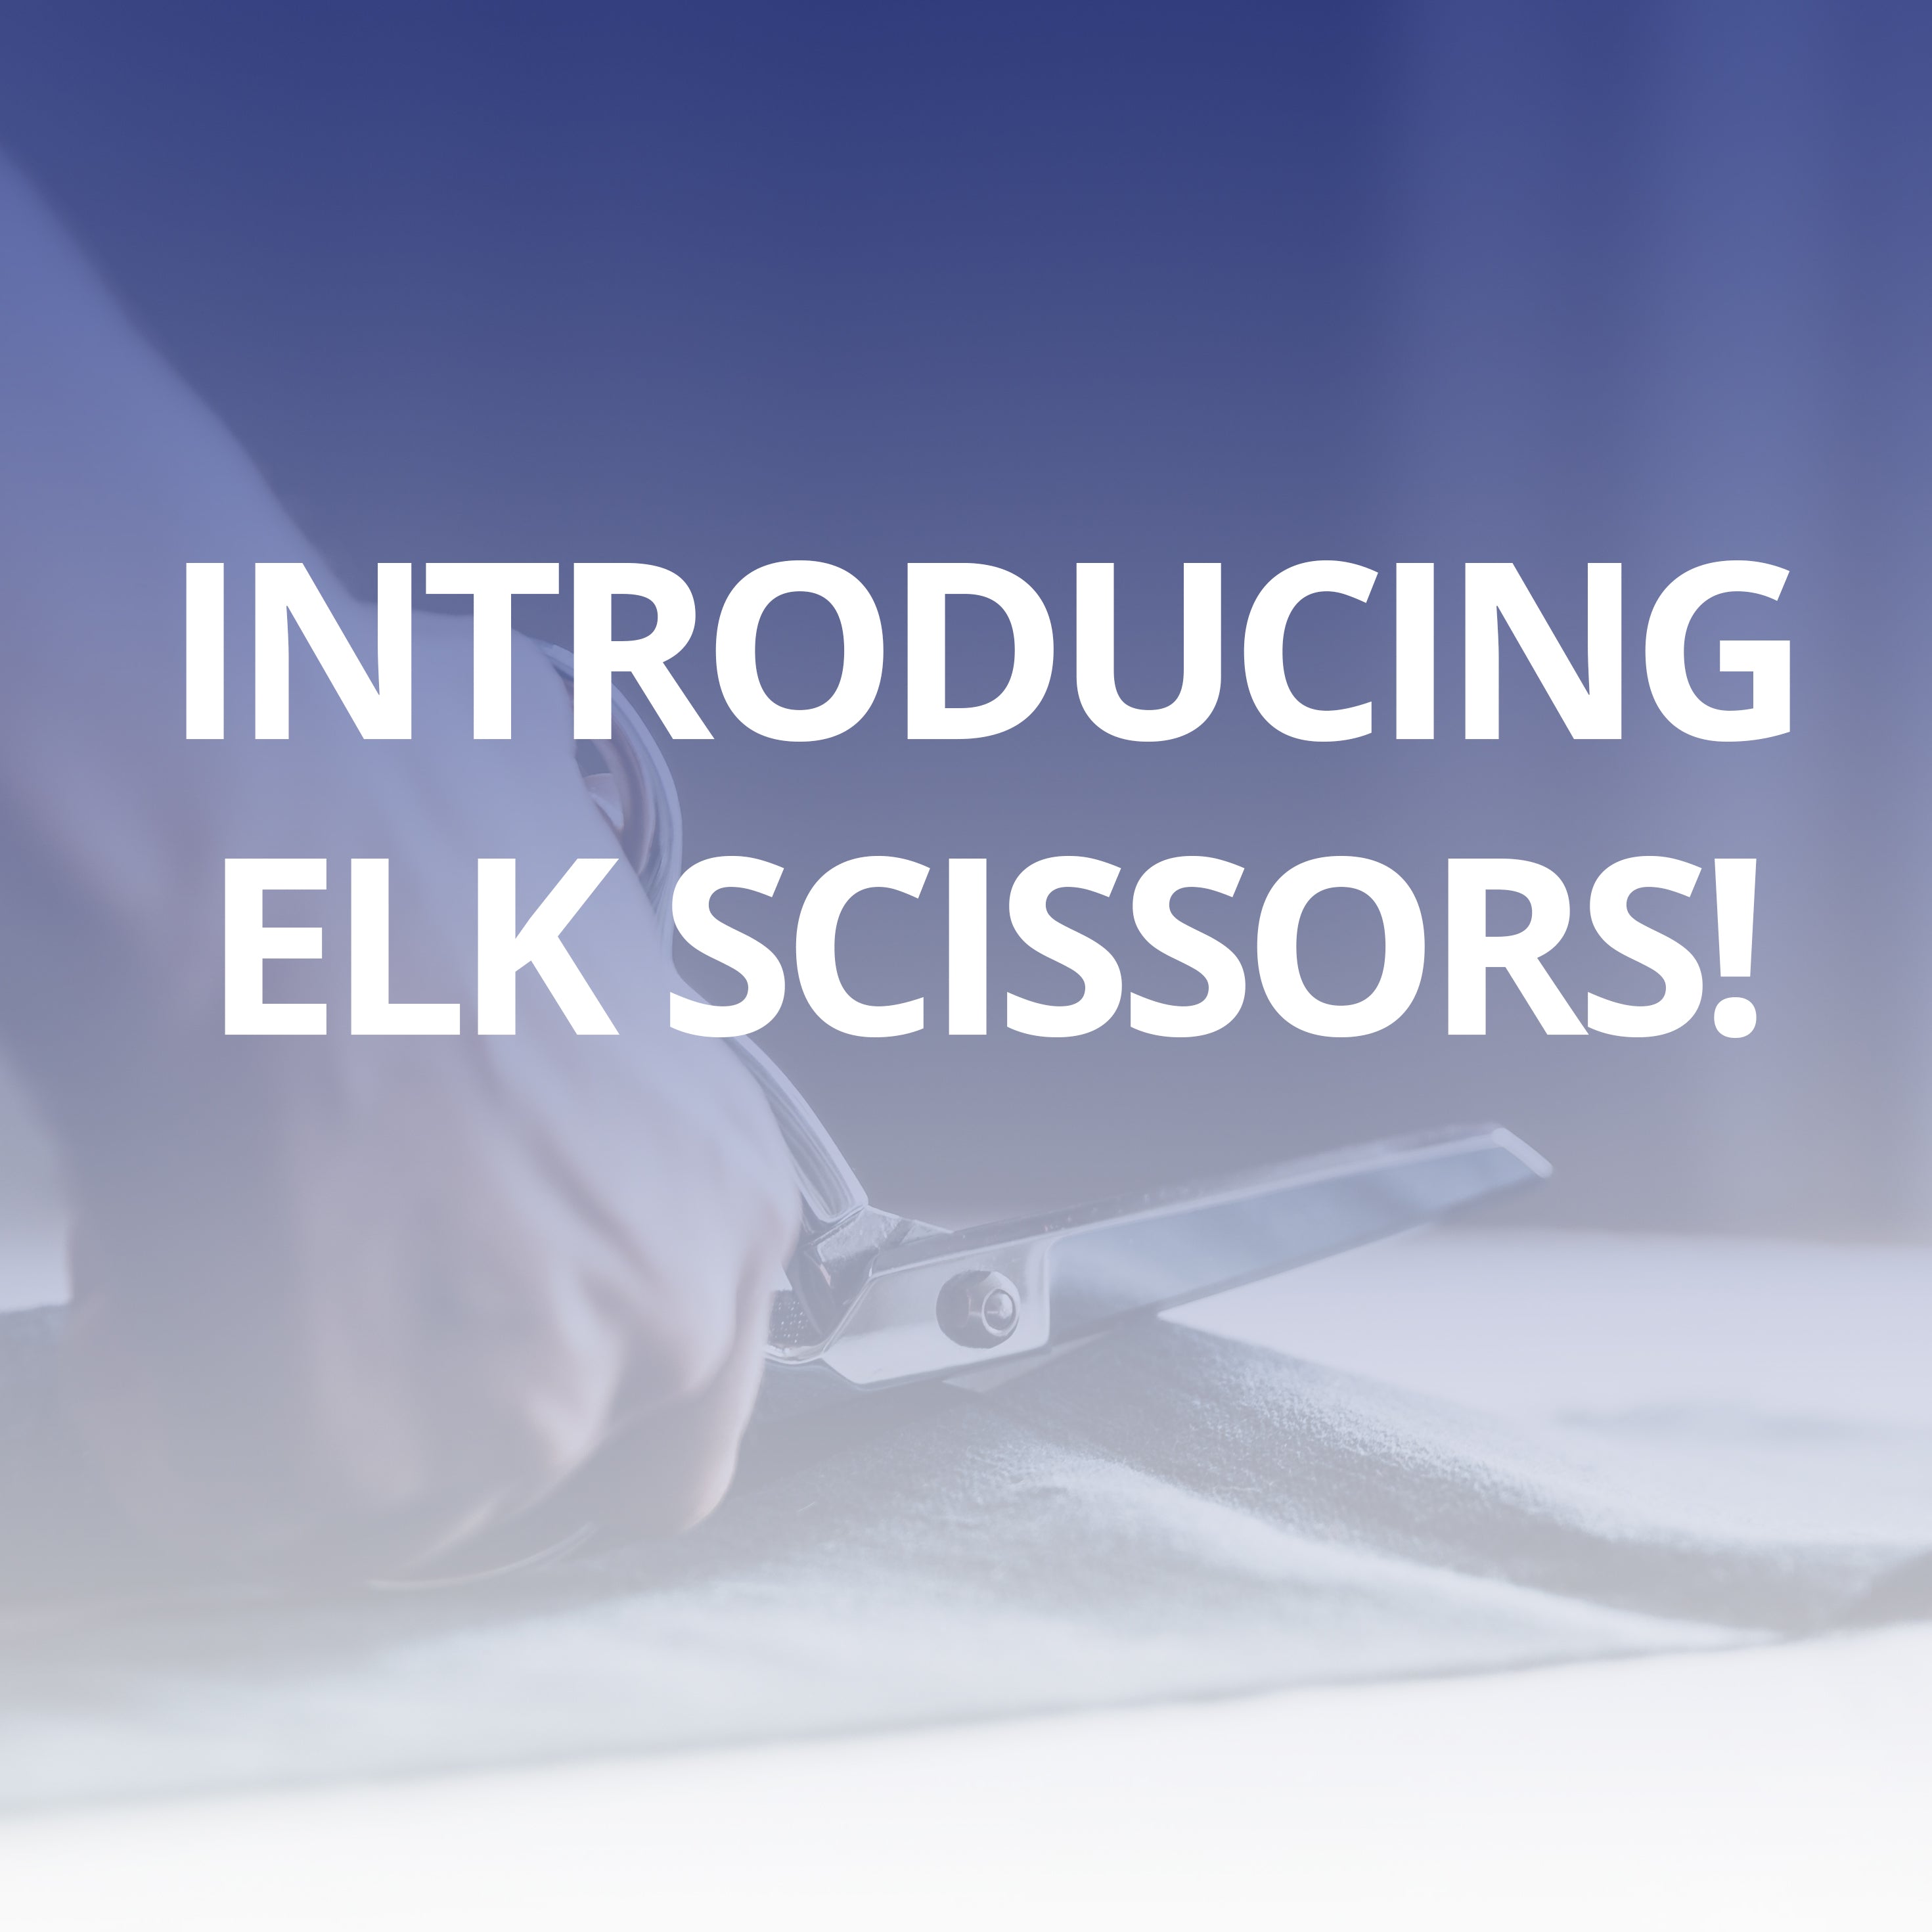 Introducing ELK Scissors